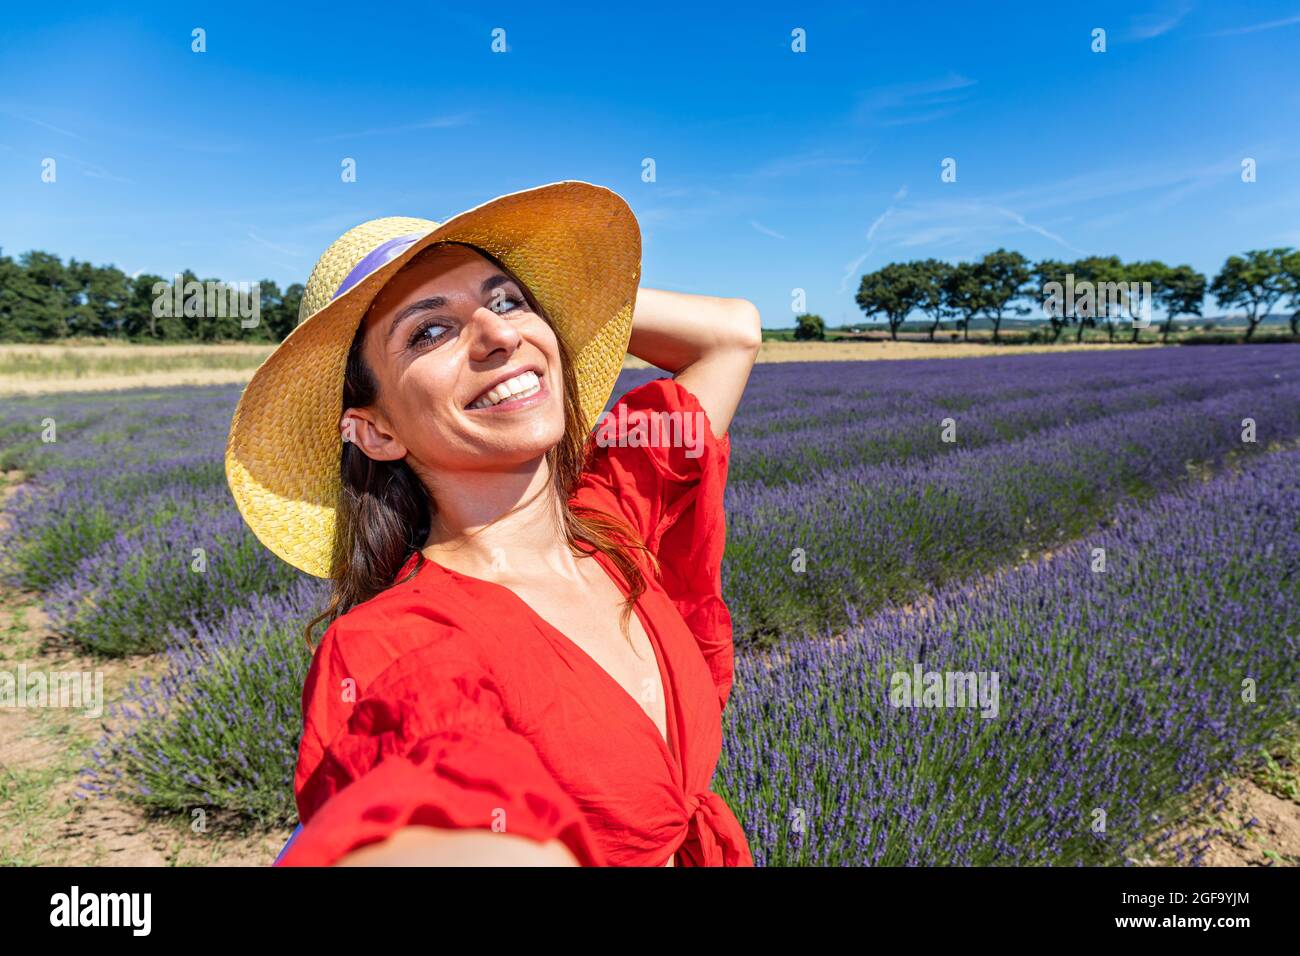 Eine schöne Frau mit Strohhut, die ein Selfie in einem blühenden Lavendelfeld nimmt. Konzept von Glück, Wohlbefinden und Freiheit. Stockfoto